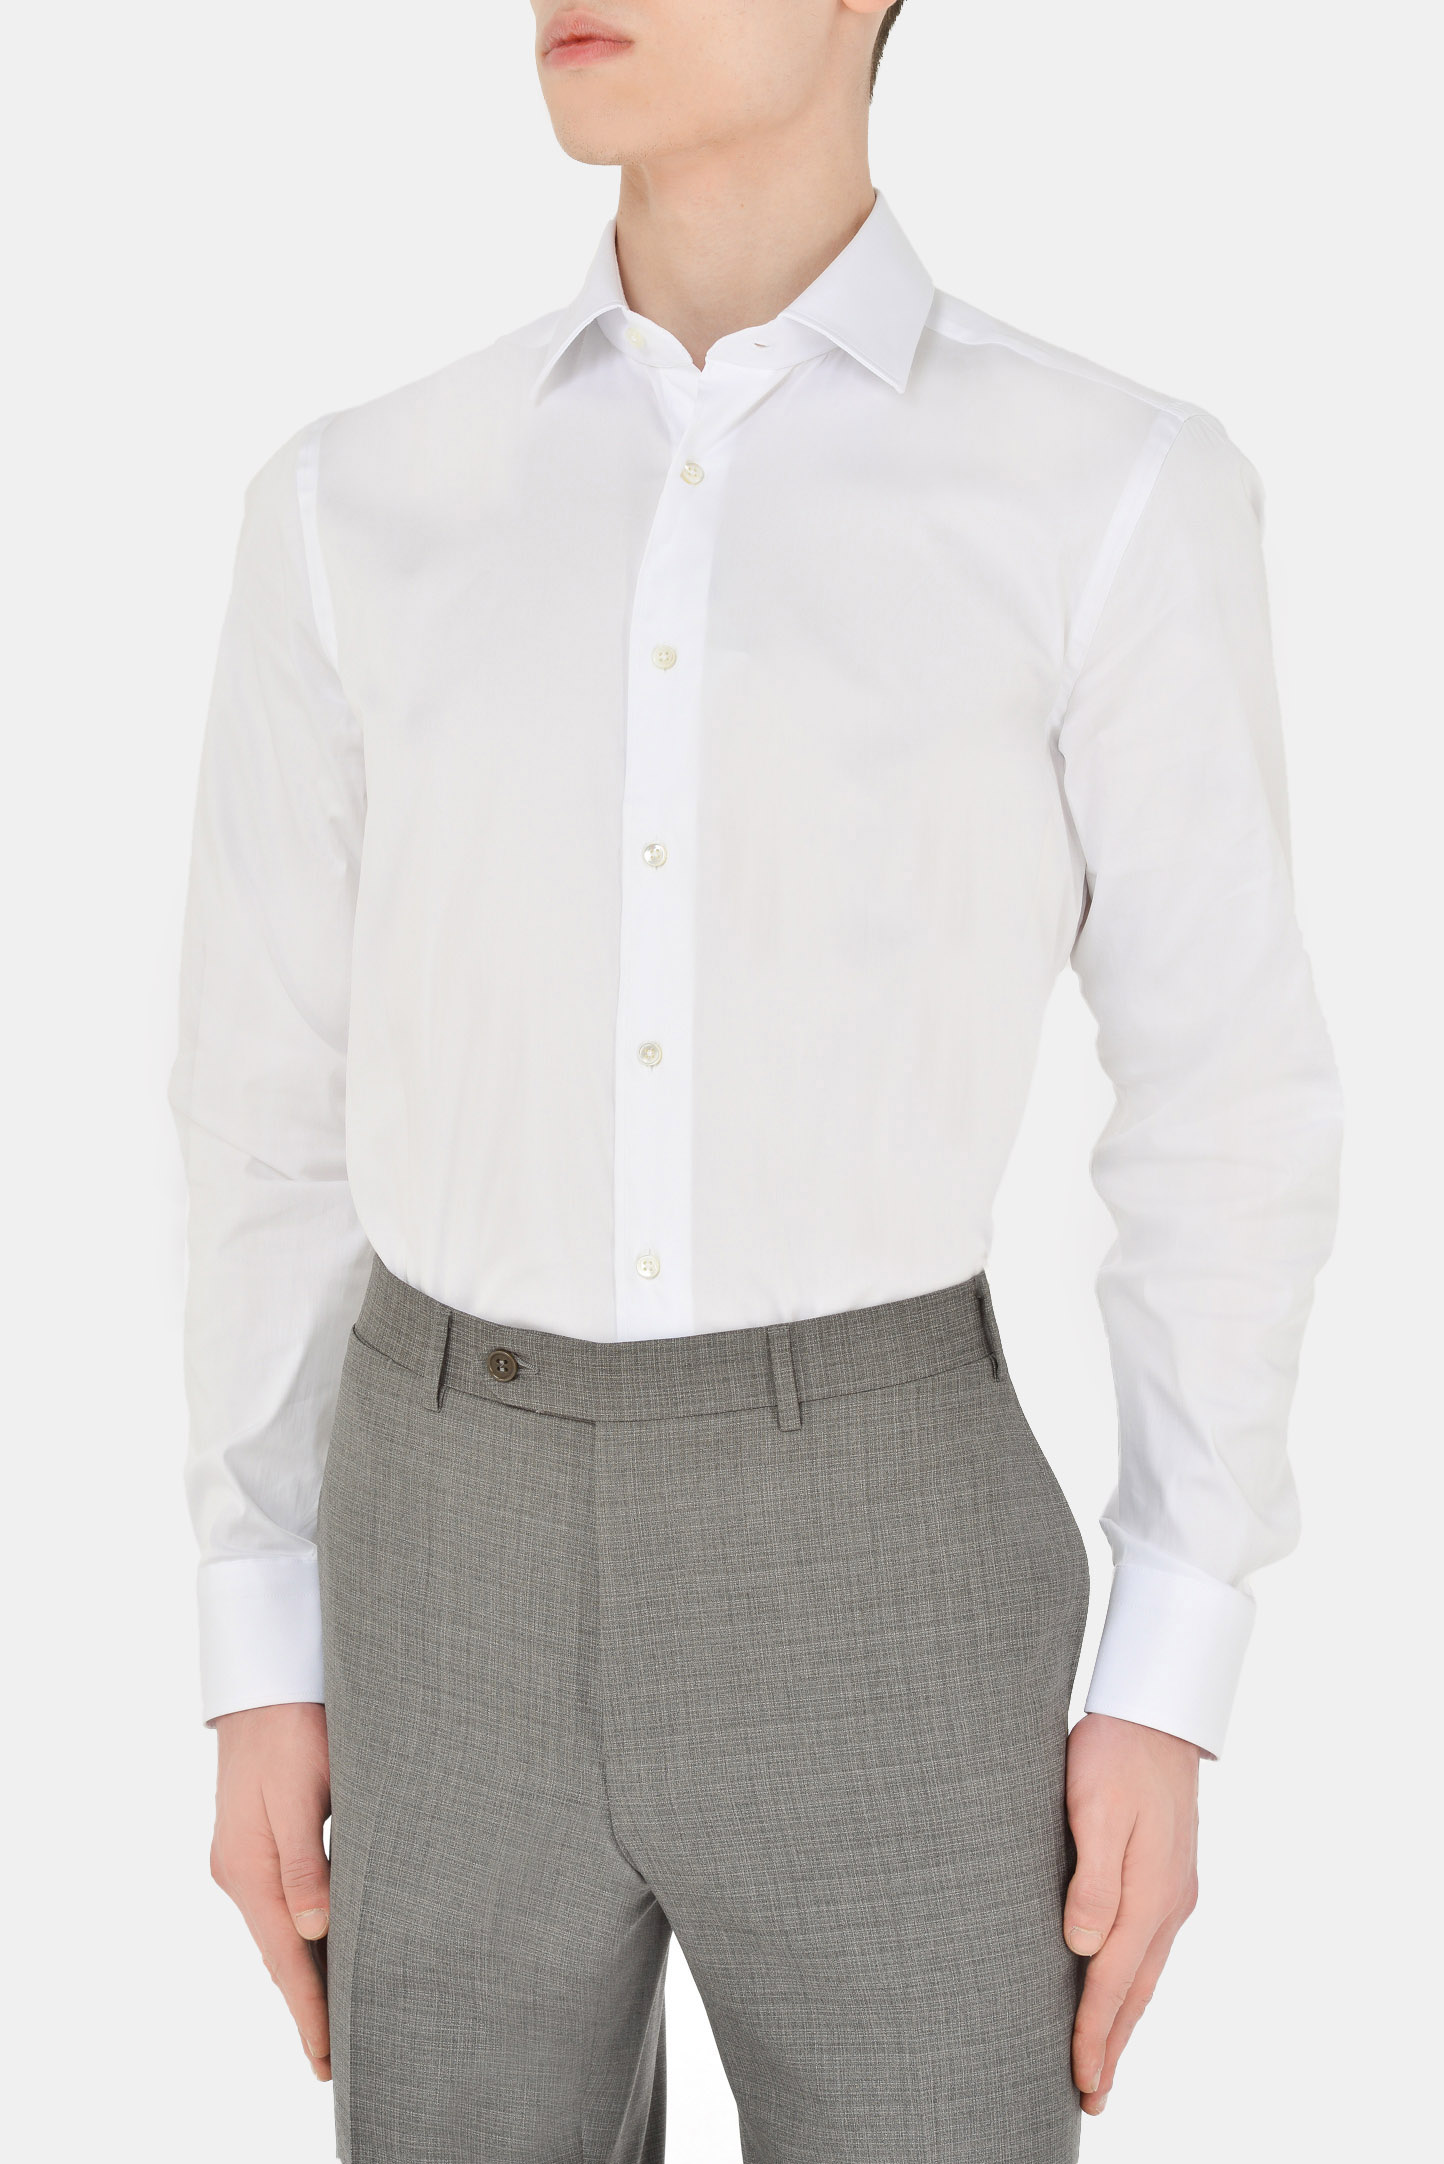 Рубашка CANALI GA00103/001, цвет: Белый, Мужской